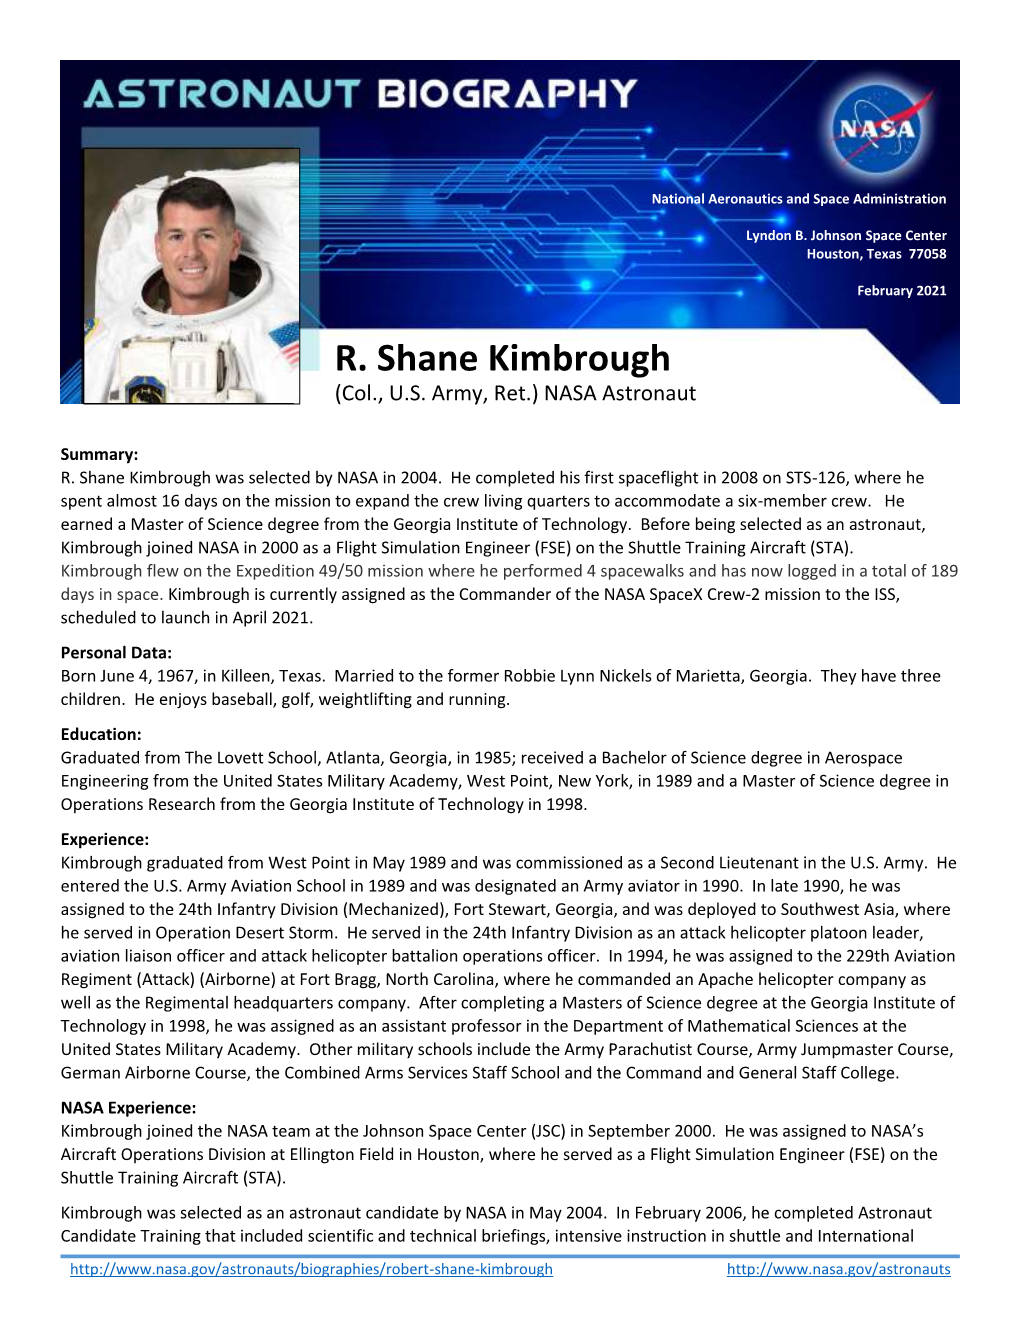 R. Shane Kimbrough (Col., U.S